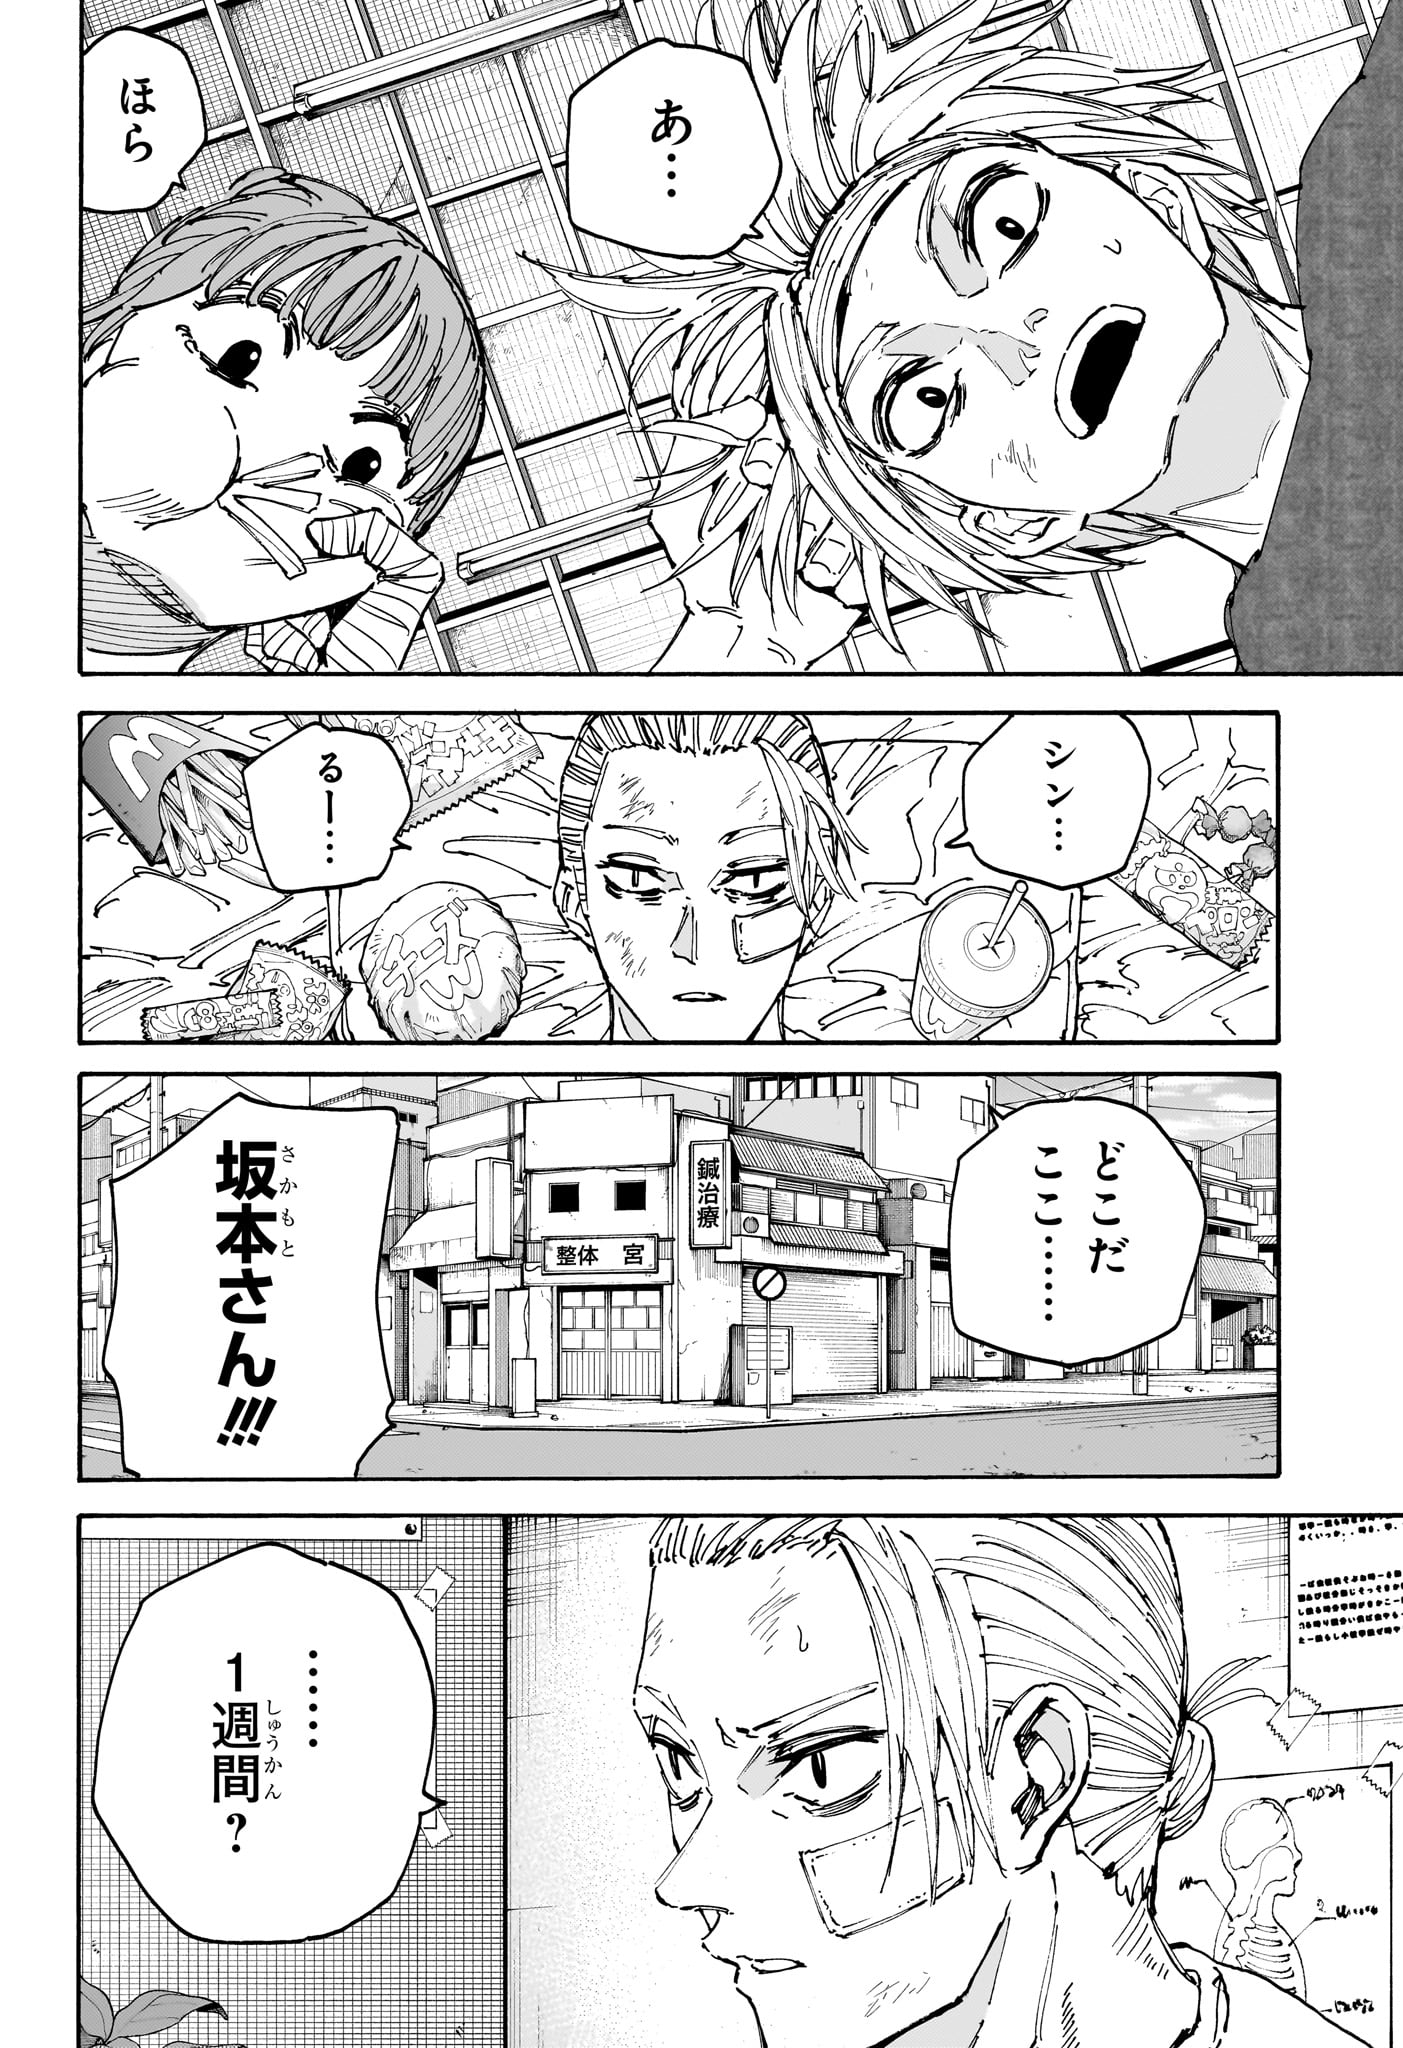 Sakamoto Days - Chapter 168 - Page 8